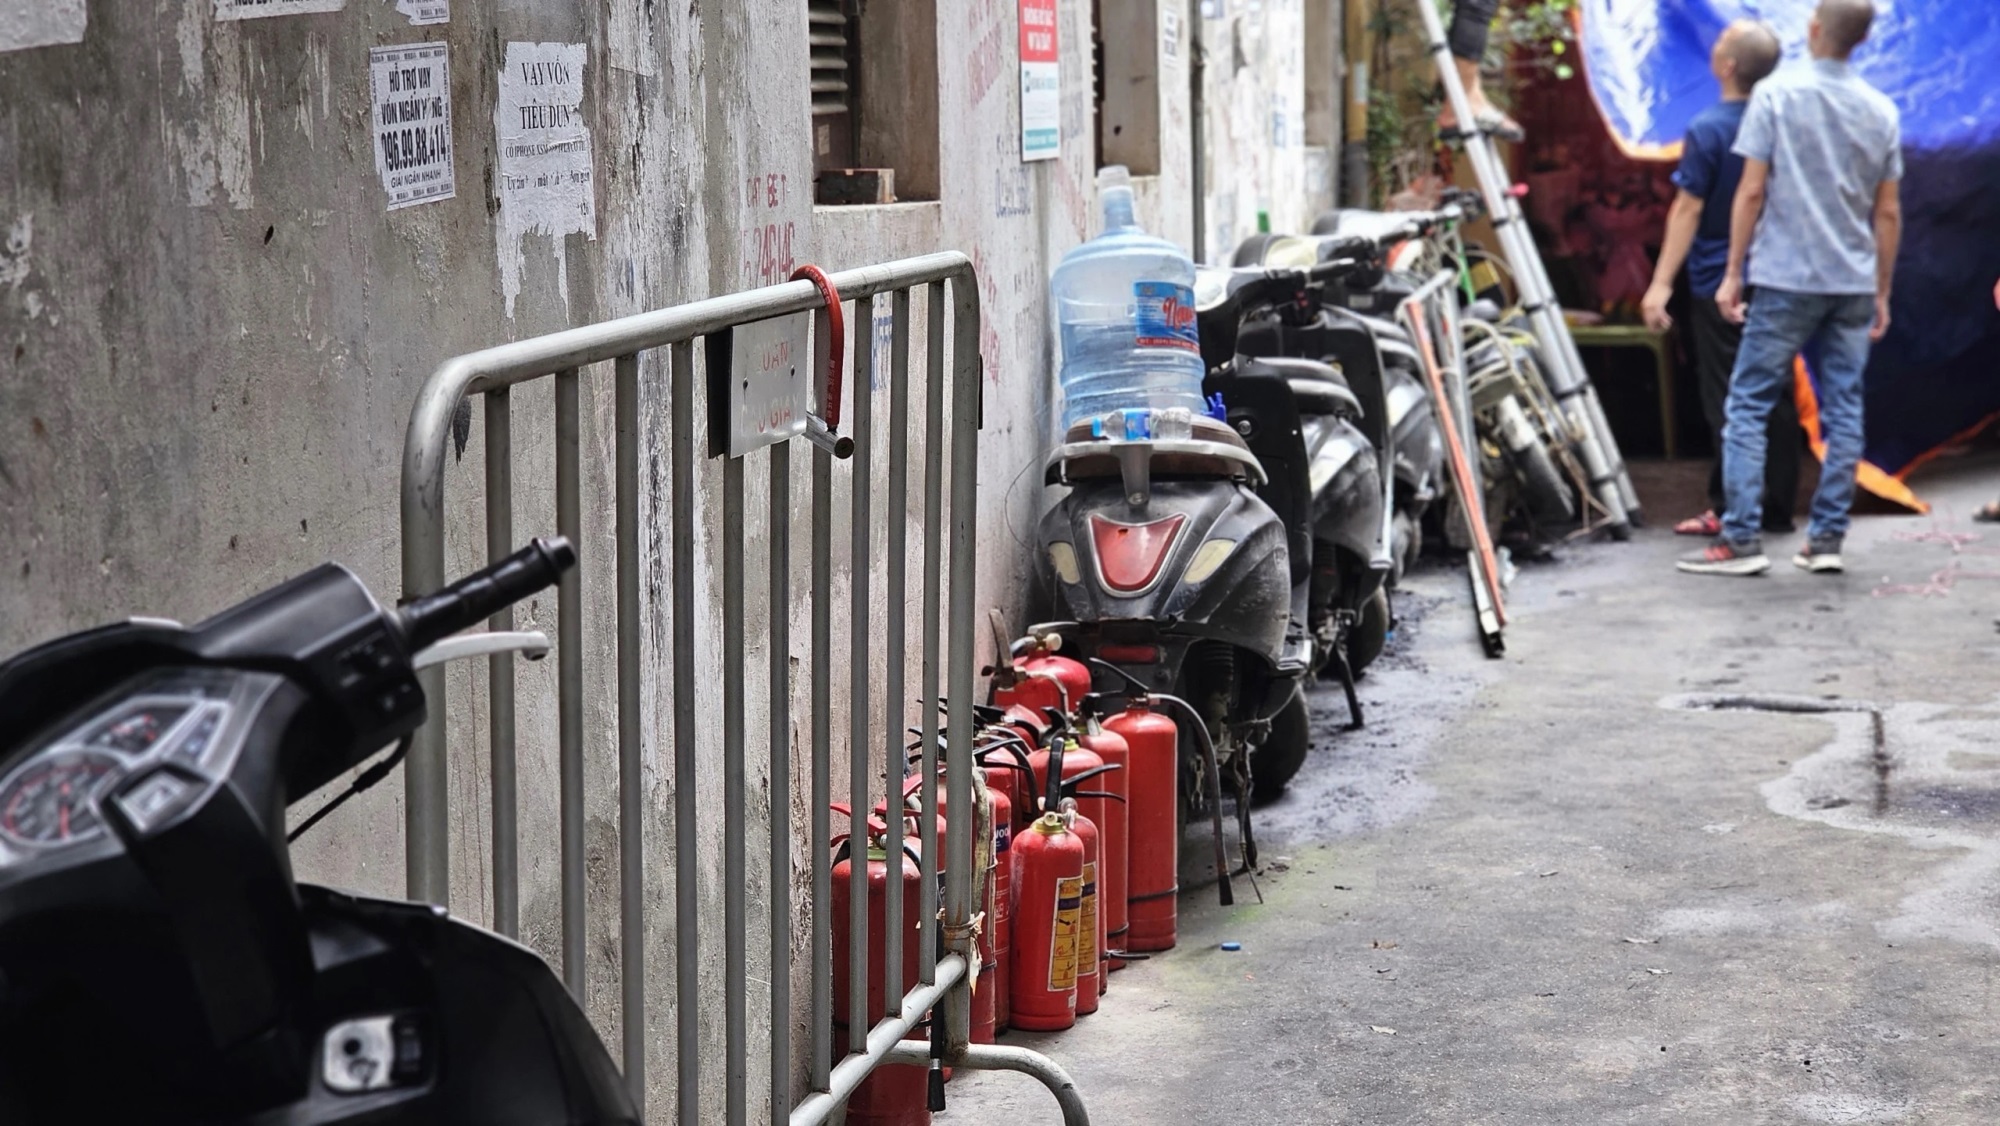 Nhiều người xếp hàng thắp hương cho các nạn nhân xấu số trong vụ cháy nhà trọ ở Hà Nội - Ảnh 2